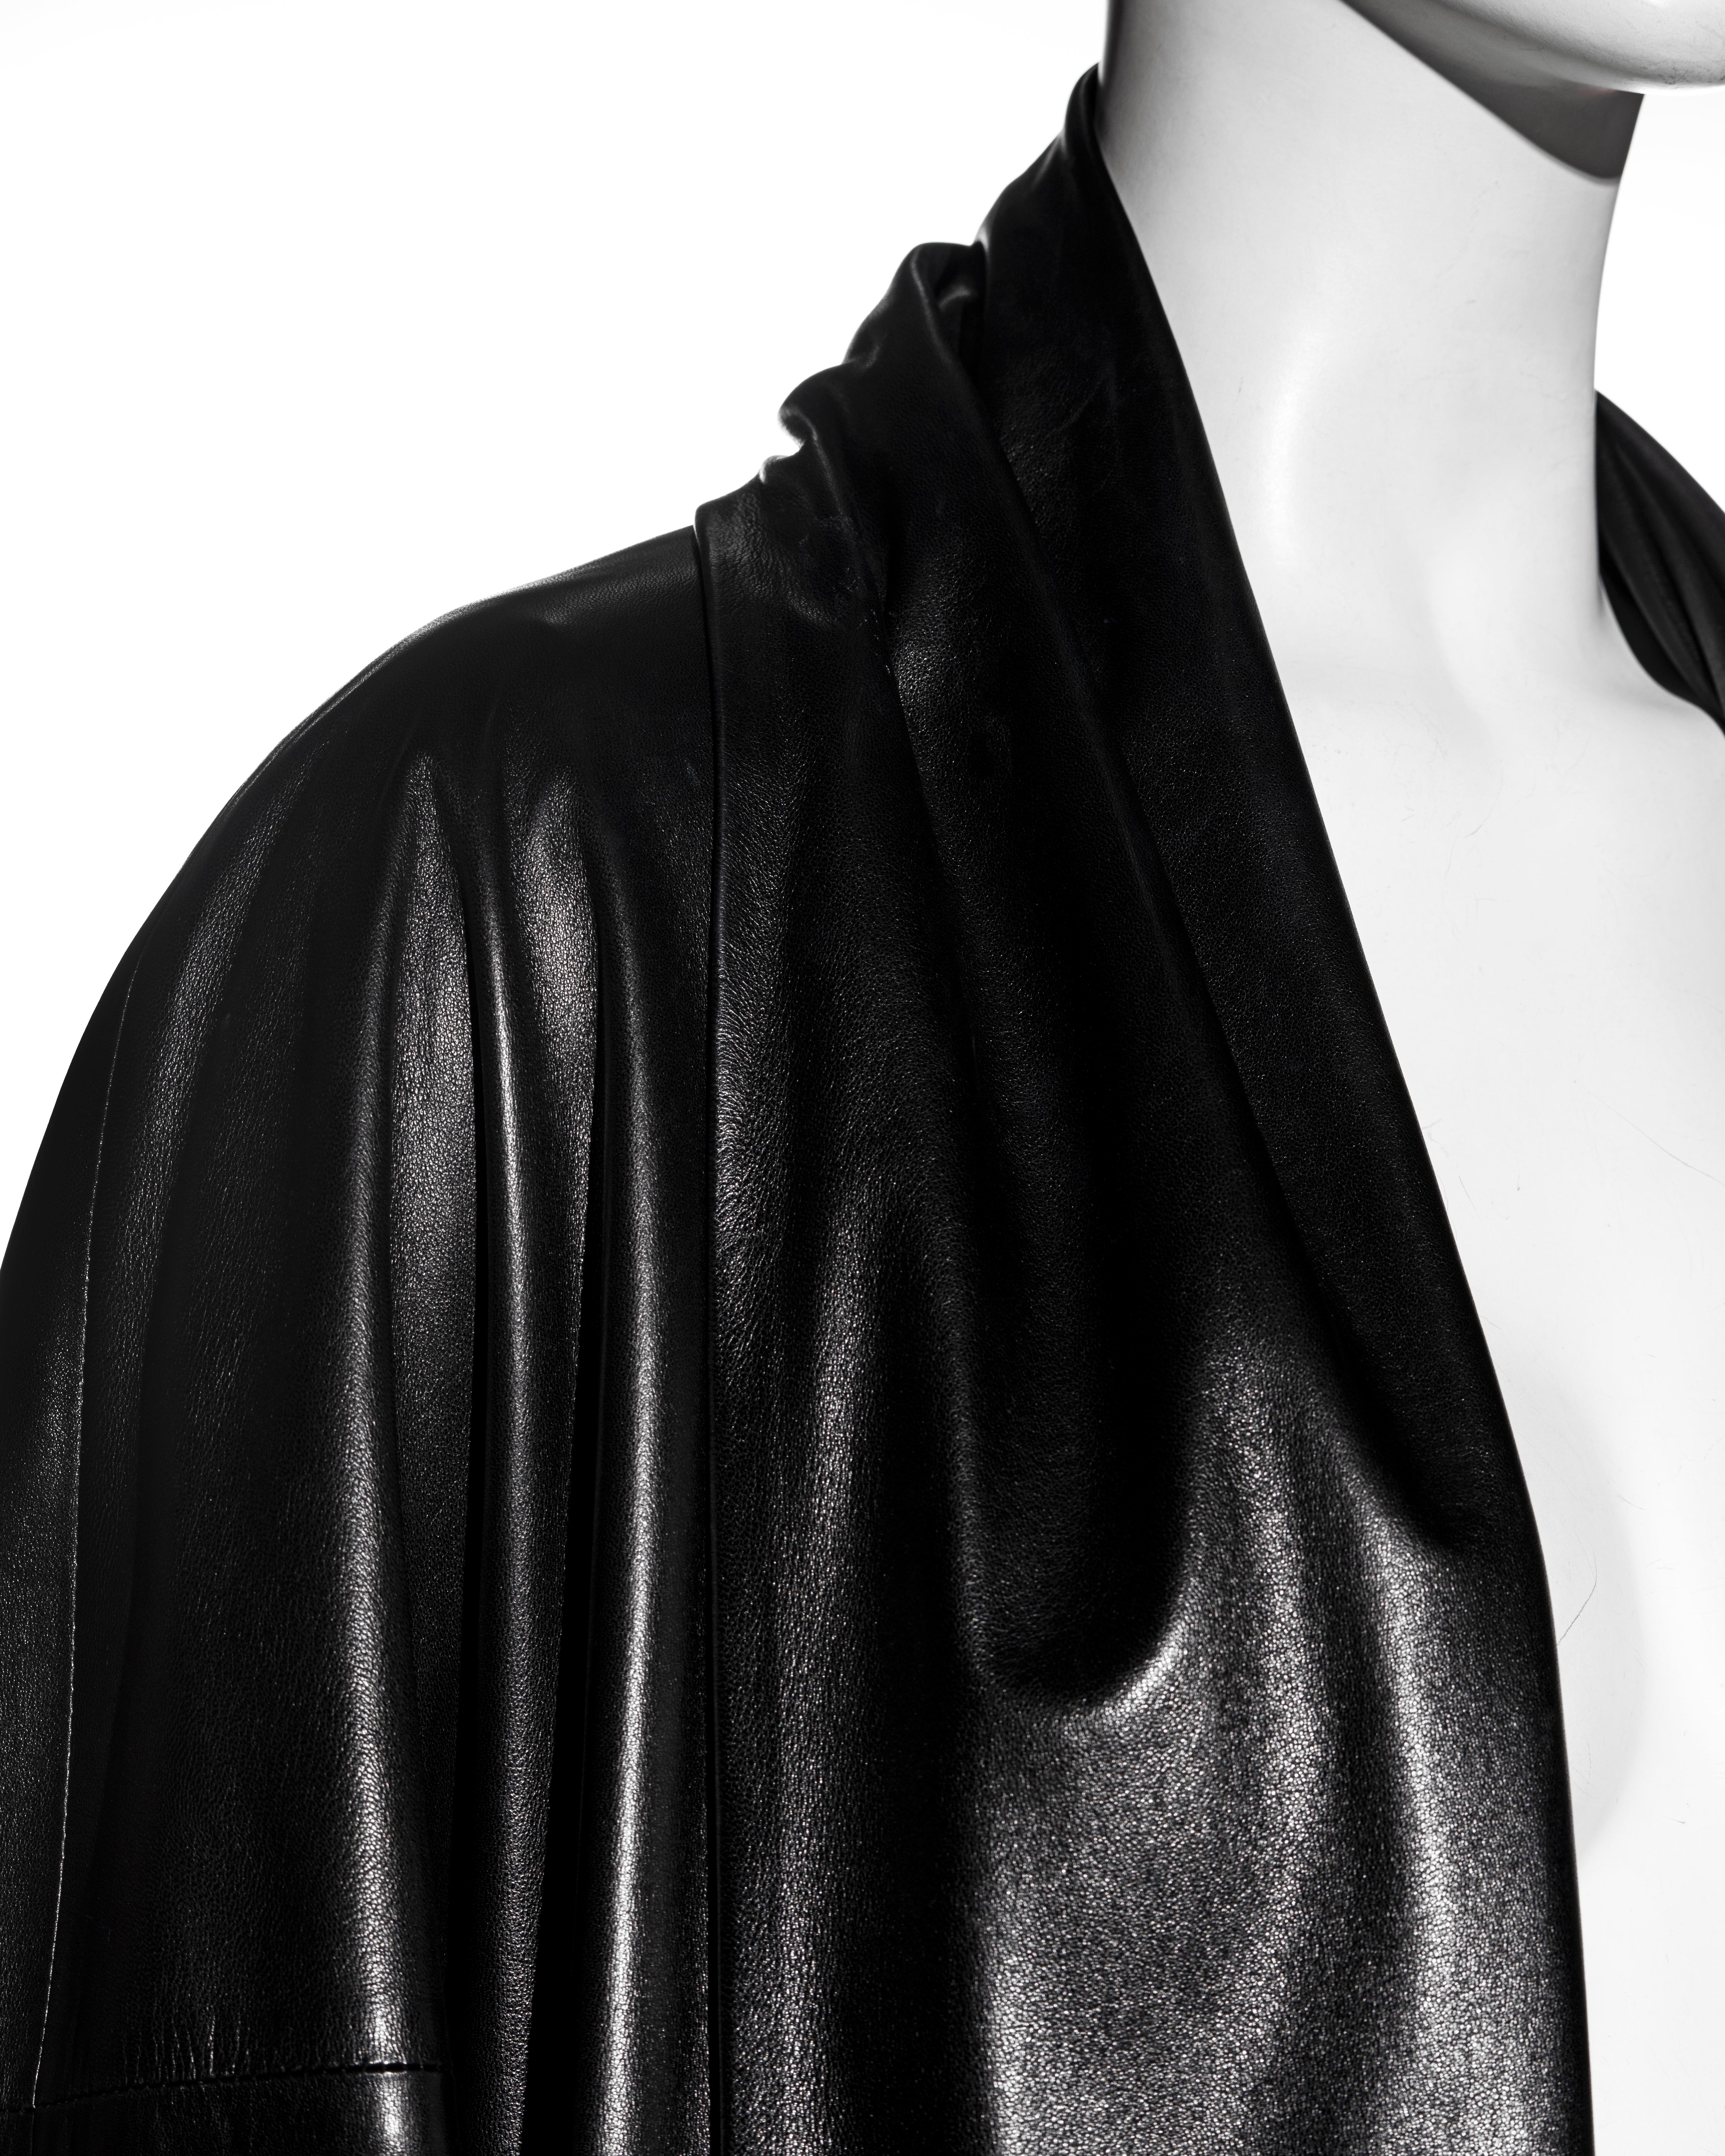 Hermes by Martin Margiela black lambskin leather full-length coat, fw 1999 1